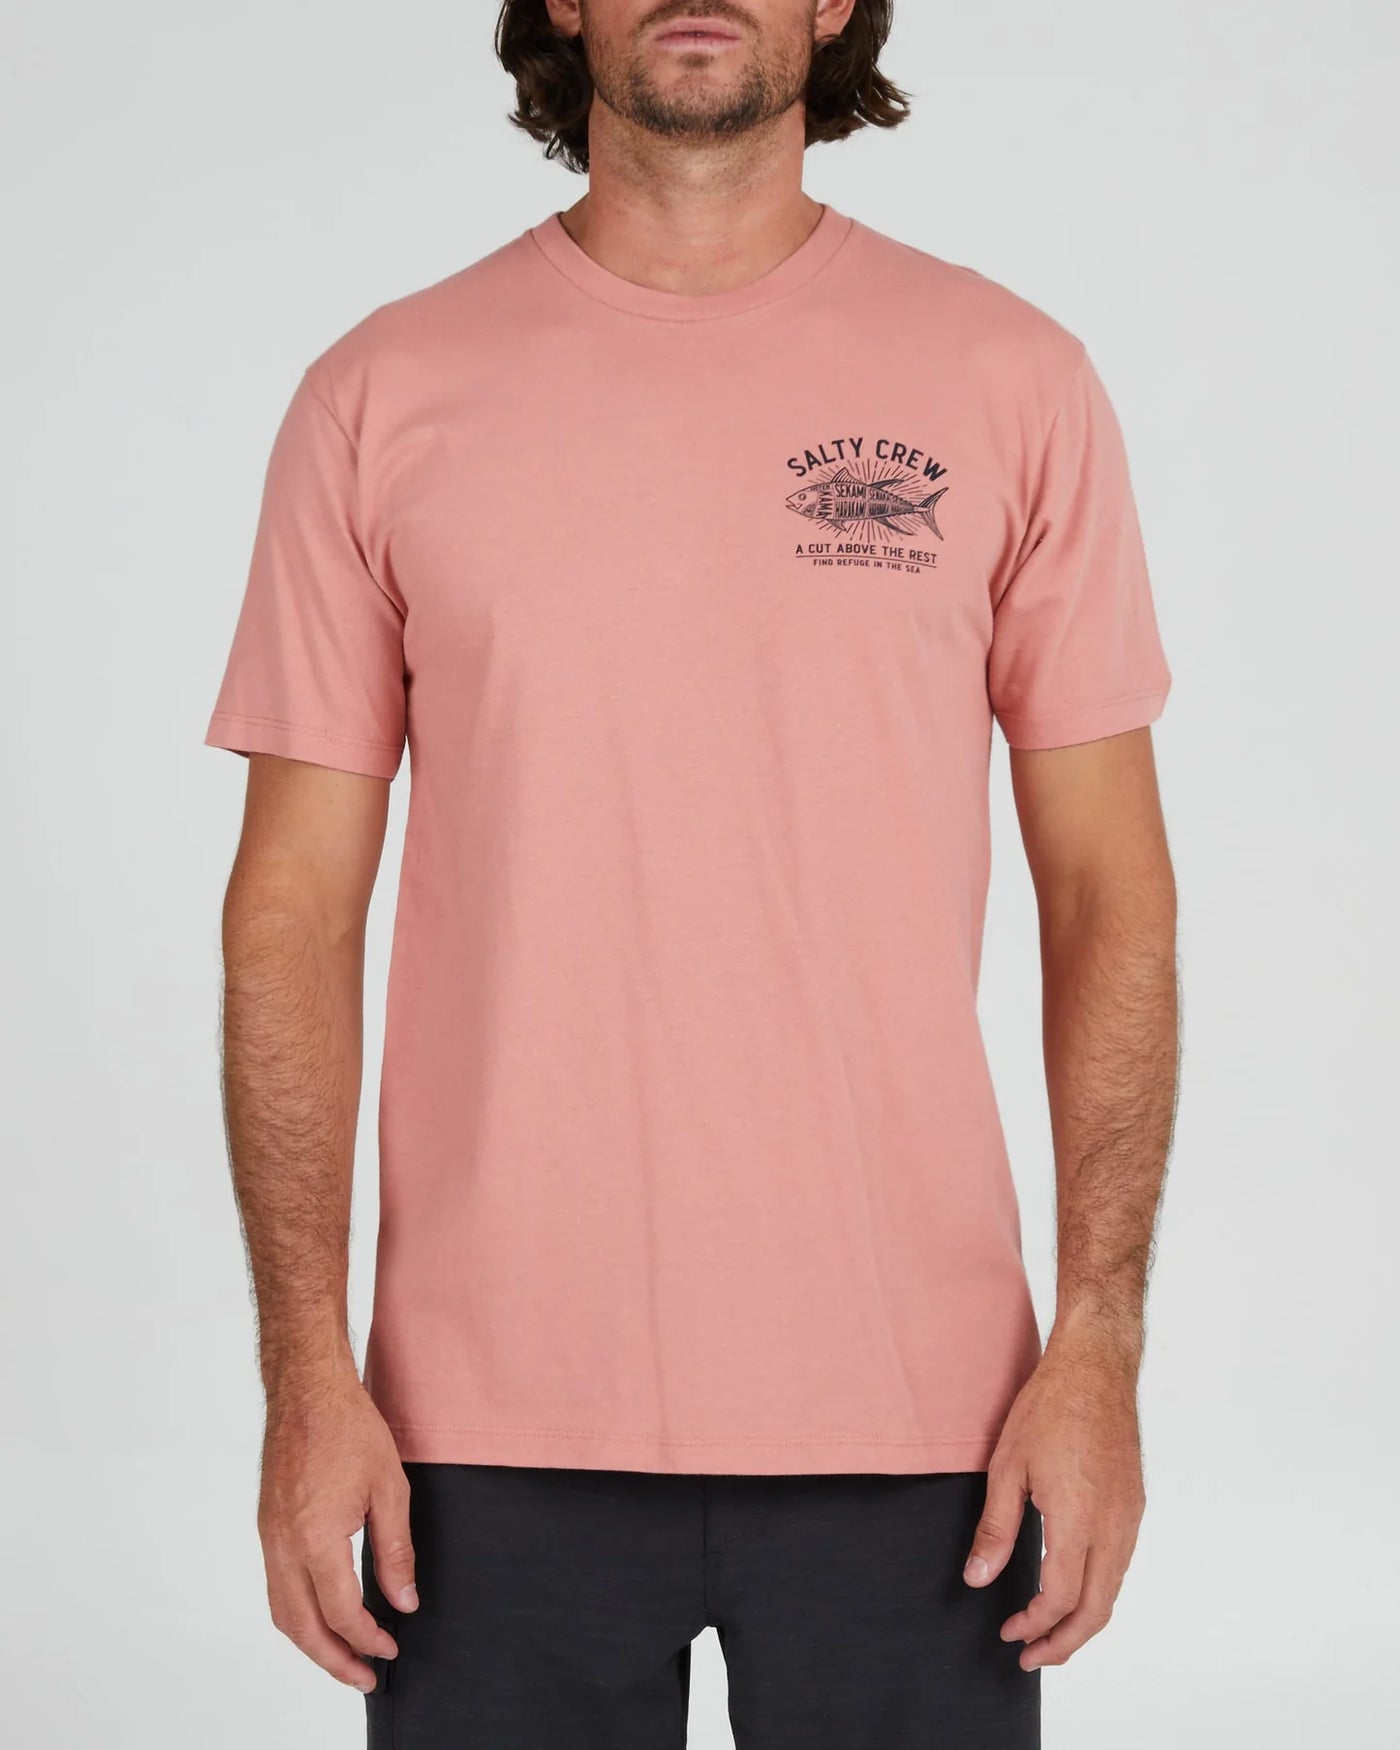 Salty Crew Cut Above Premium S/S Tee Camiseta Hombre